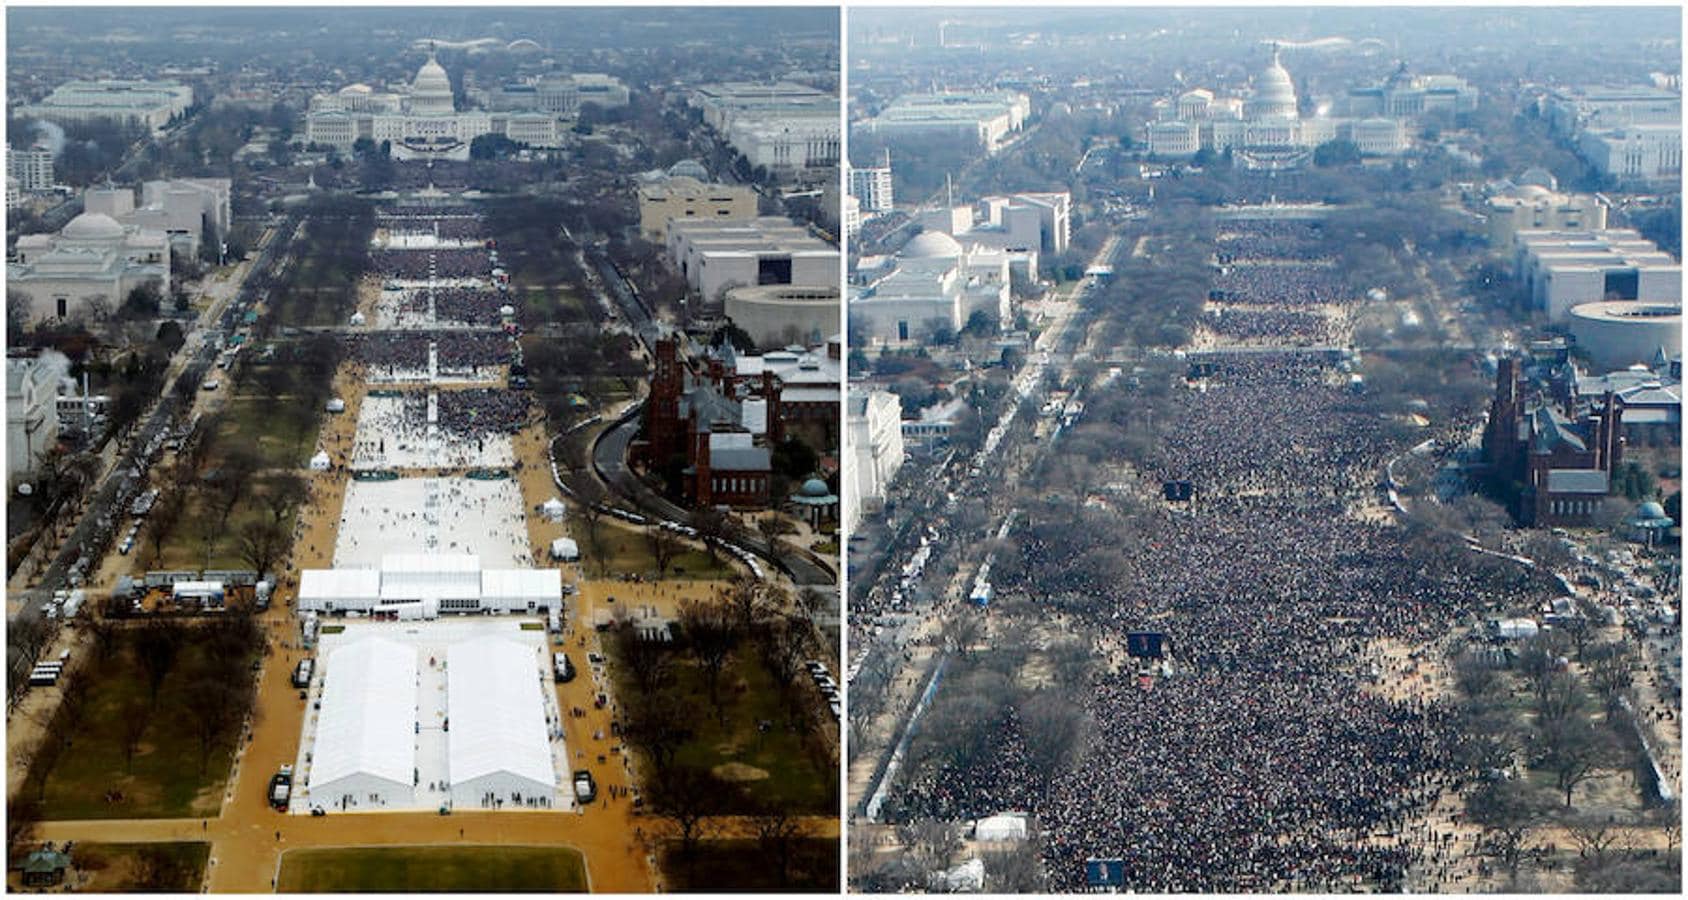 Una combinación de fotos tomadas en el National Mall muestra a las multitudes que asisten a las ceremonias de toma de posesión para jurar en el presidente de EE.UU. Donald Trump el 20 de enero de 2017 y el presidente Barack Obama el 20 de enero de 2009, en Washington, EE.UU